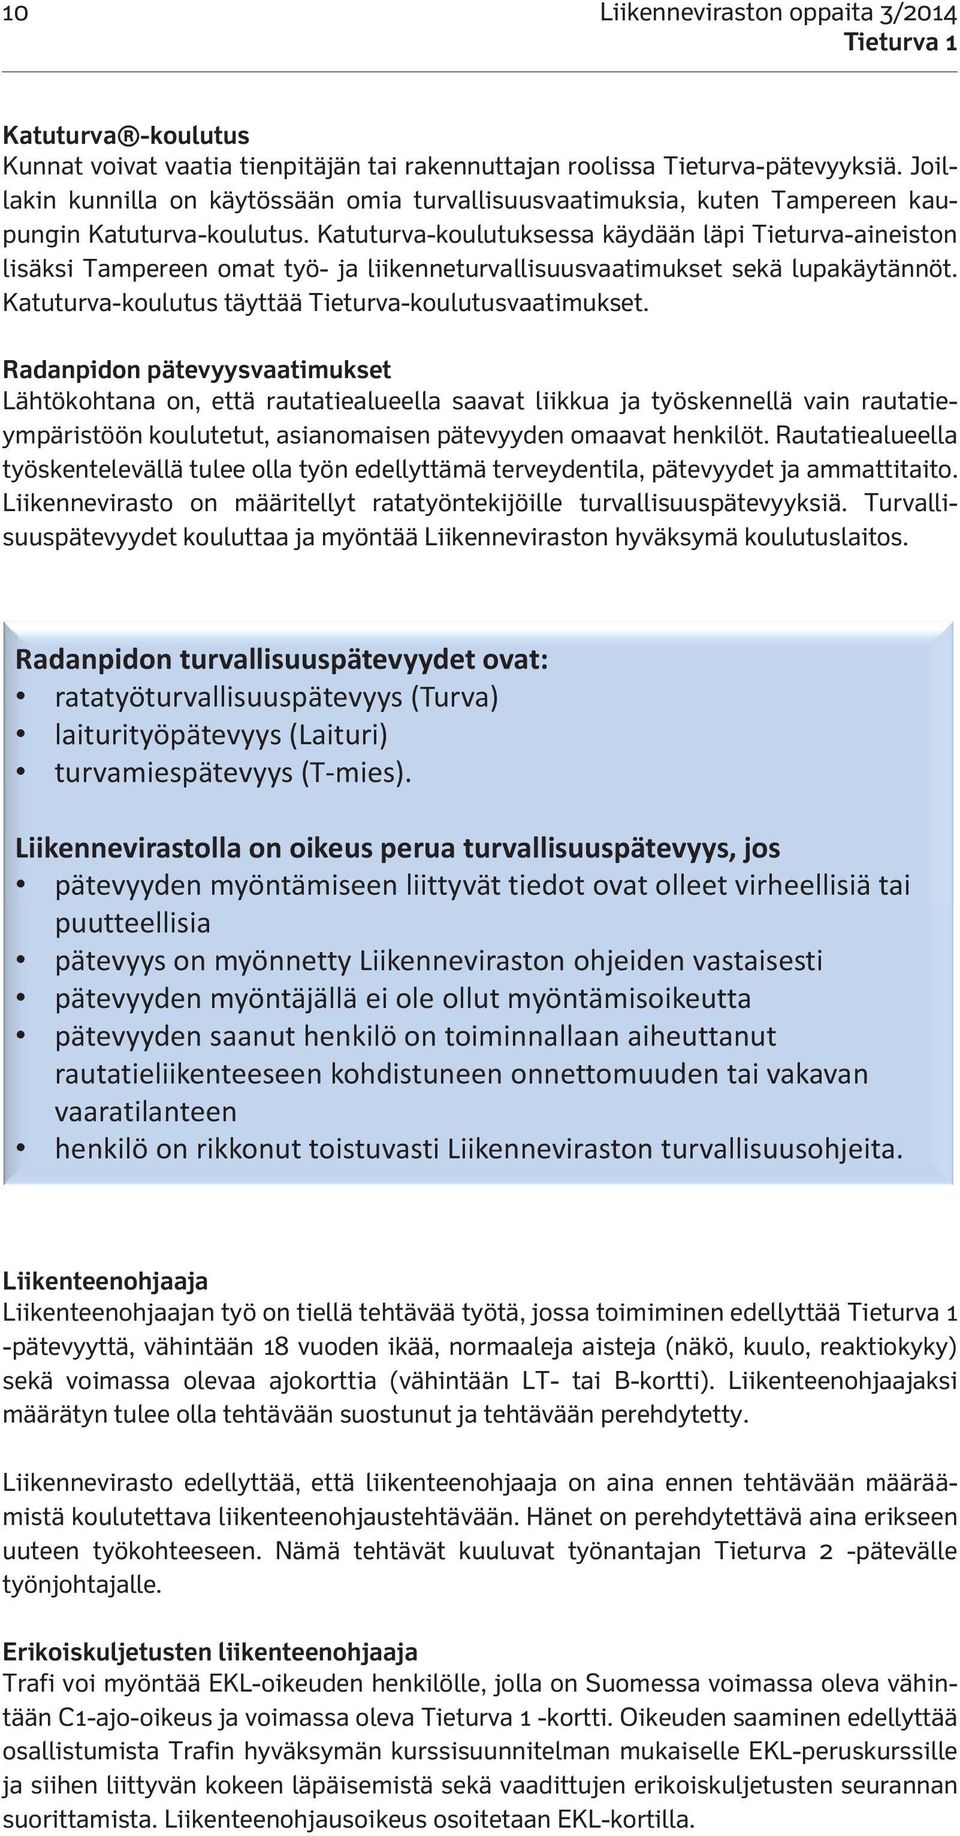 Katuturva-koulutuksessa käydään läpi Tieturva-aineiston lisäksi Tampereen omat työ- ja liikenneturvallisuusvaatimukset sekä lupakäytännöt. Katuturva-koulutus täyttää Tieturva-koulutusvaatimukset.